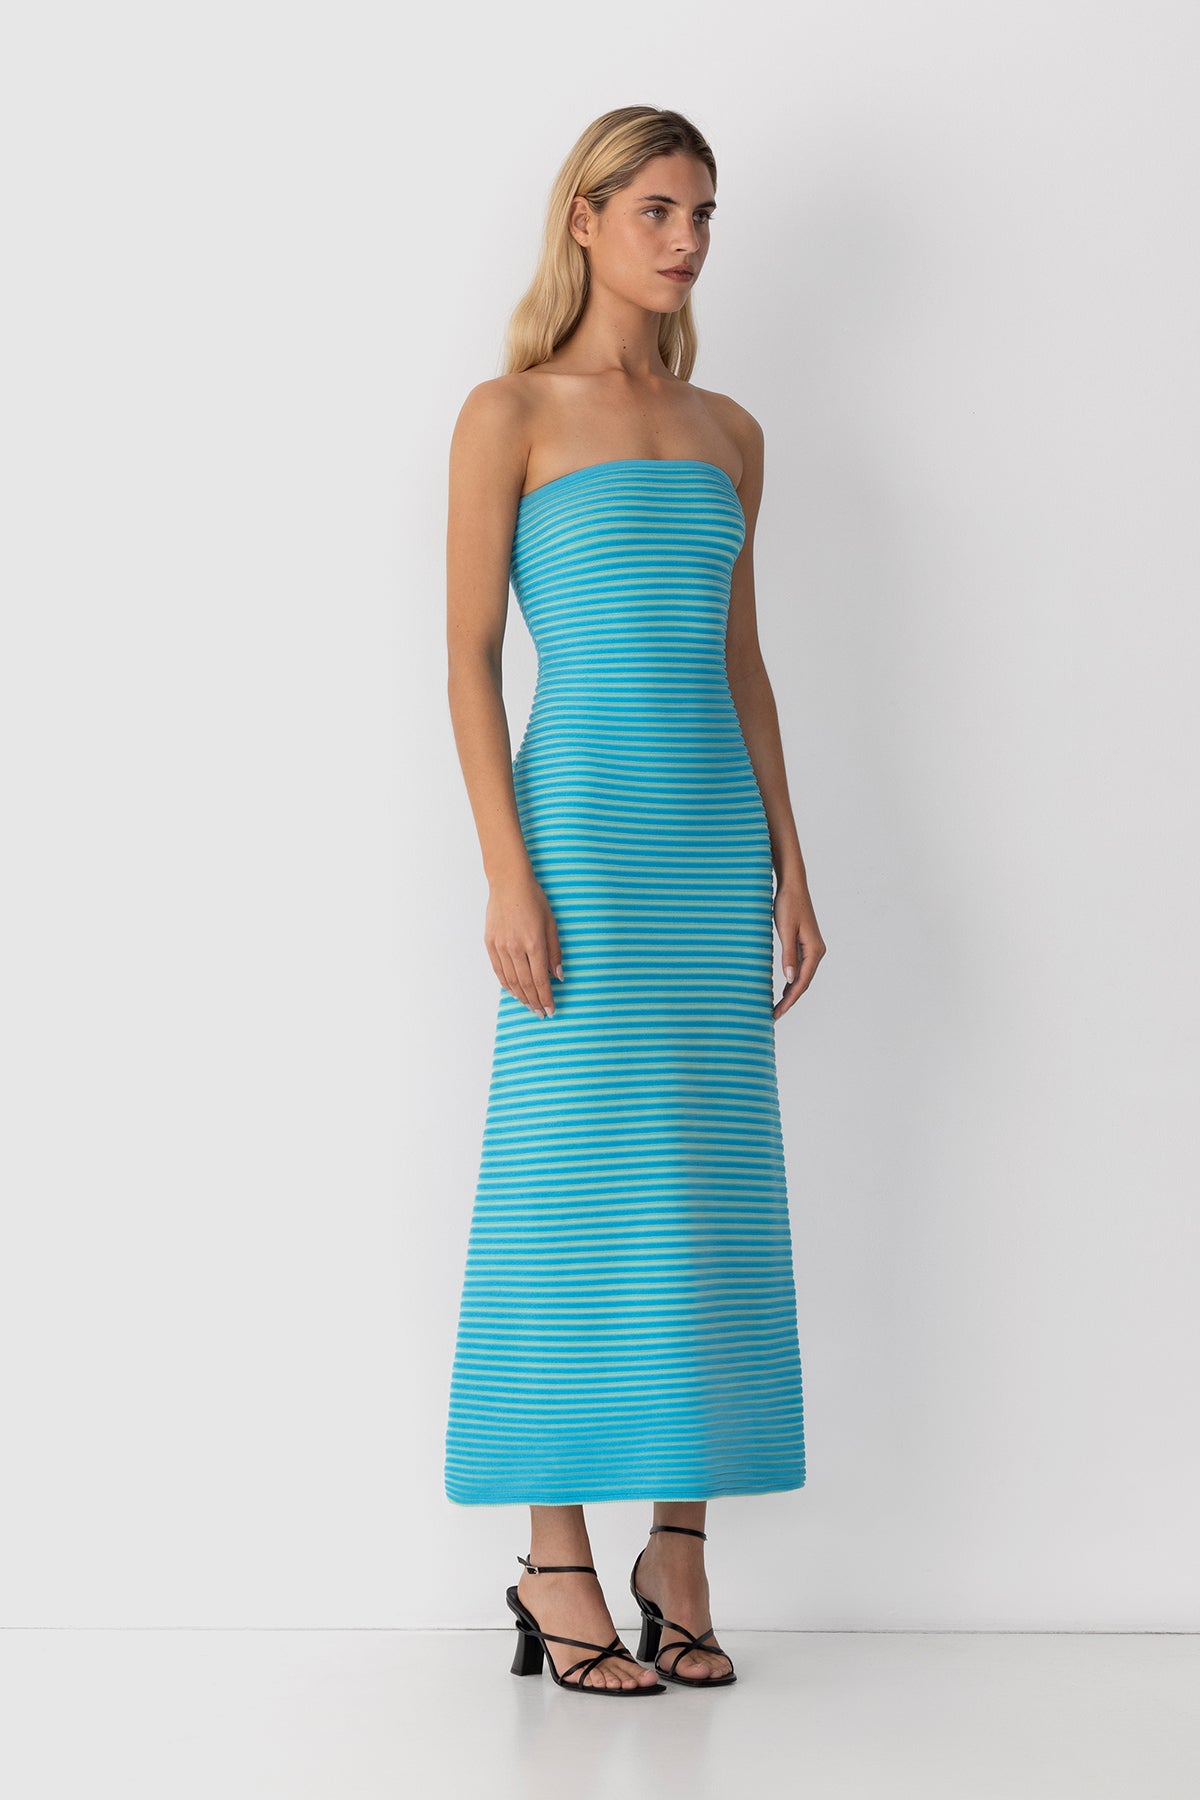 Sunmor Knit Maxi Dress - Aqua